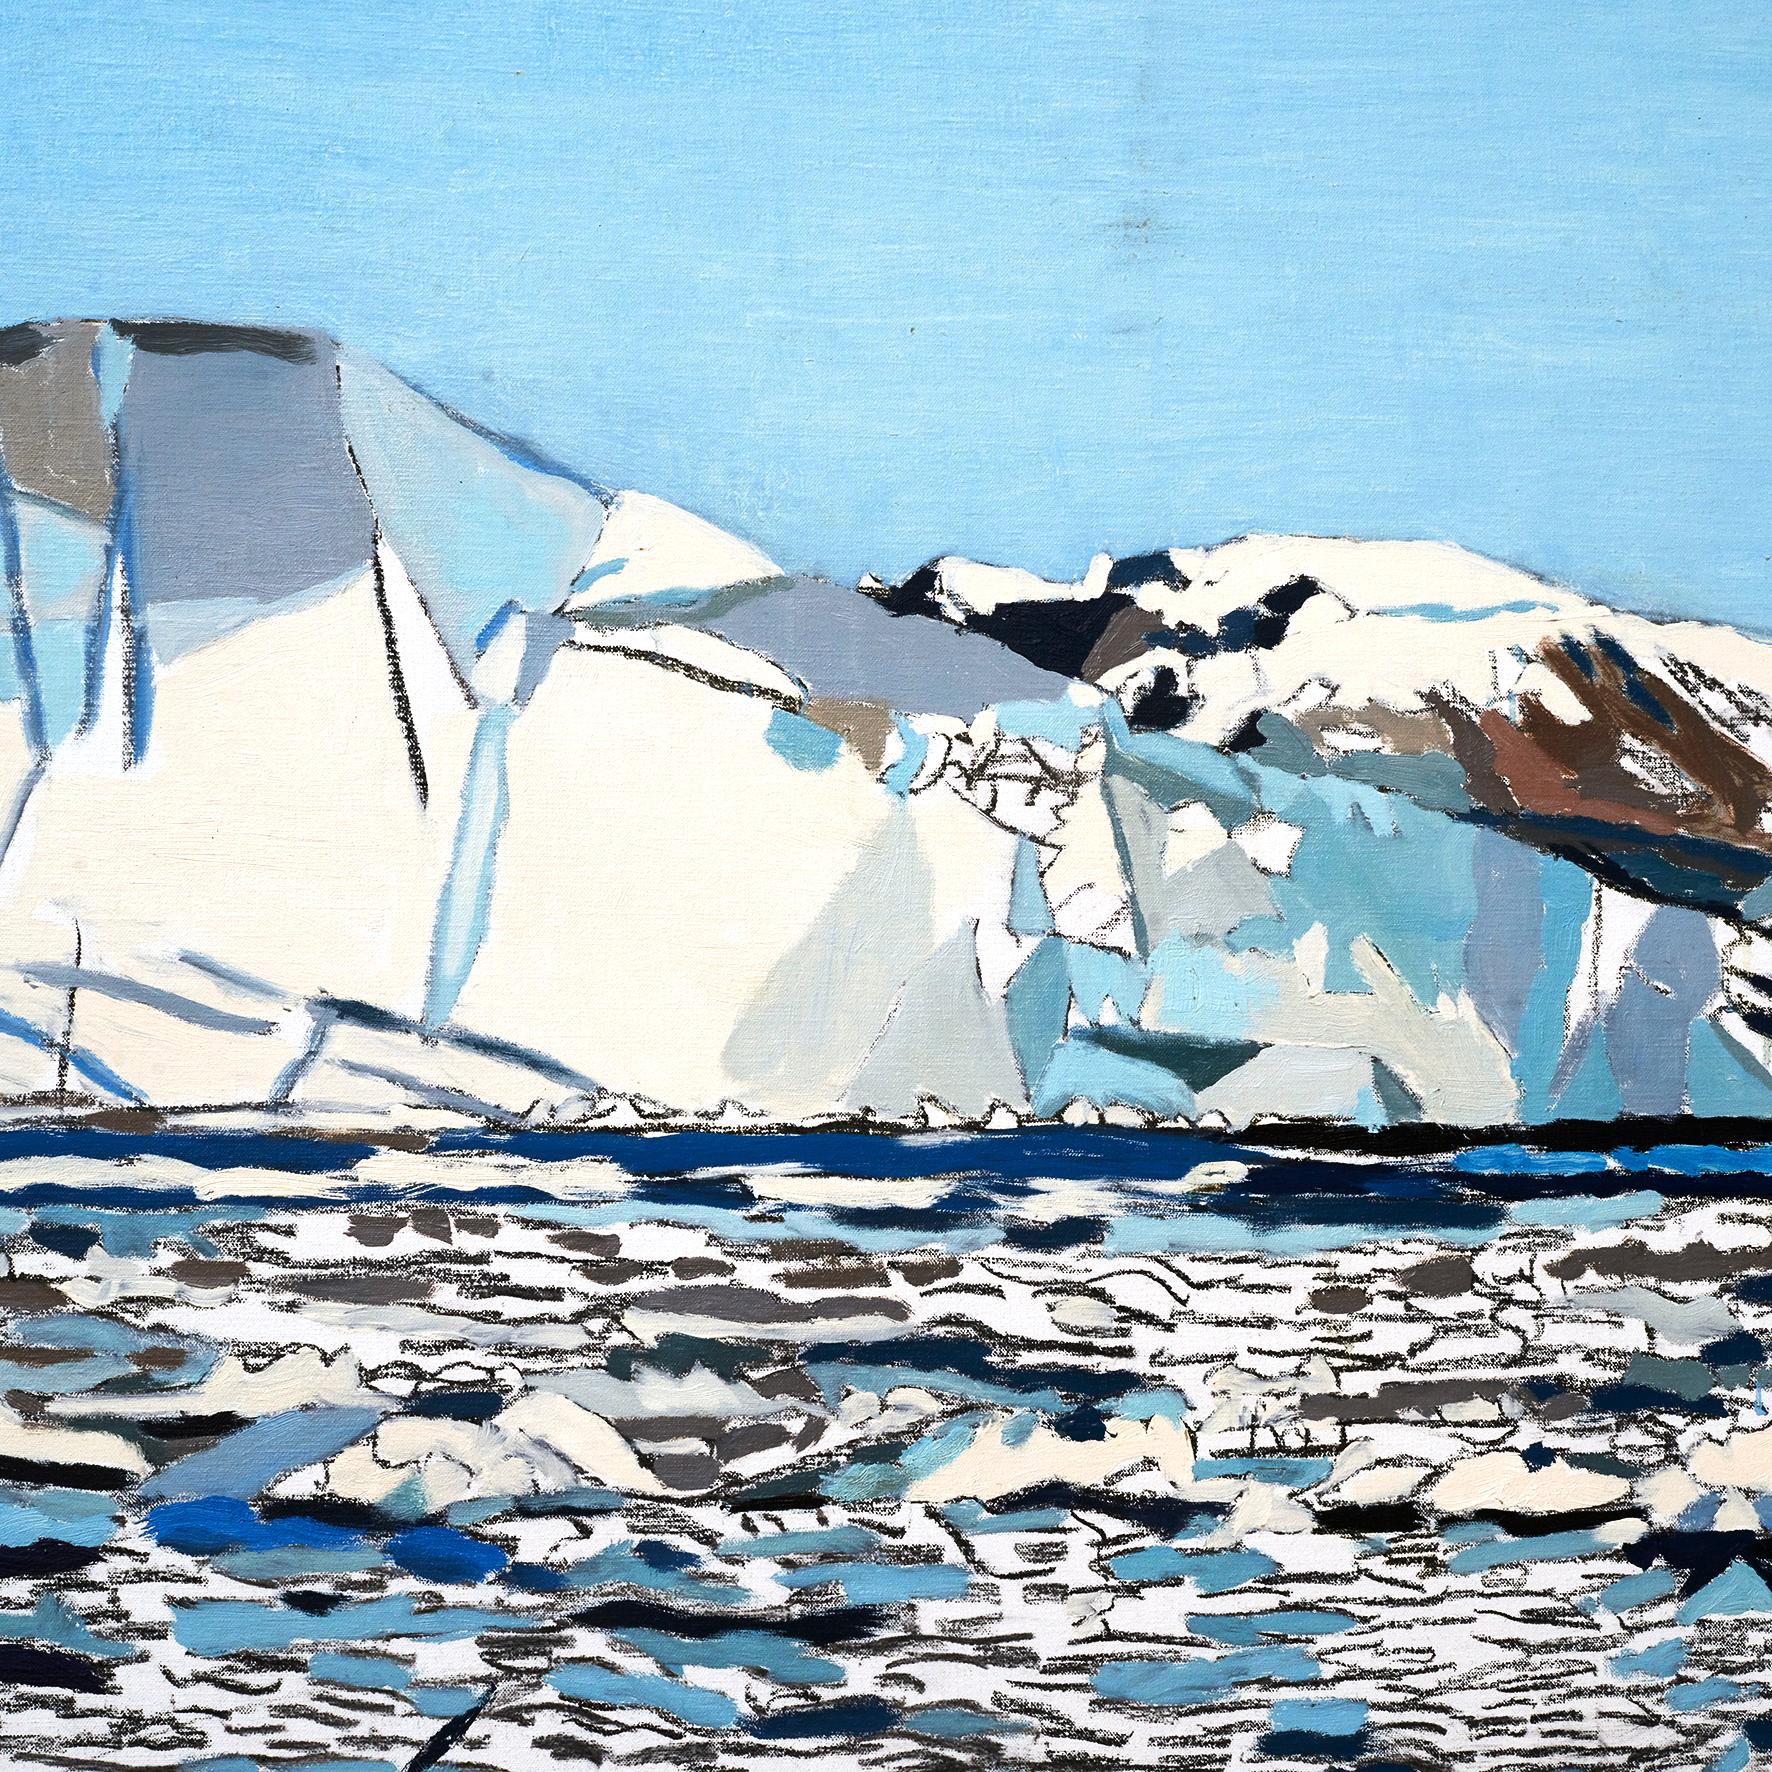 Das Gemälde zeigt das grönländische Inlandeis mit mehreren Eisbergen. 
Eines von Evas letzten großen Projekten war es, Motive aus der Arktis zu malen.

Dieses Gemälde stammt aus ihrem Nachlass und ist daher nicht ganz fertig, aber ein sehr